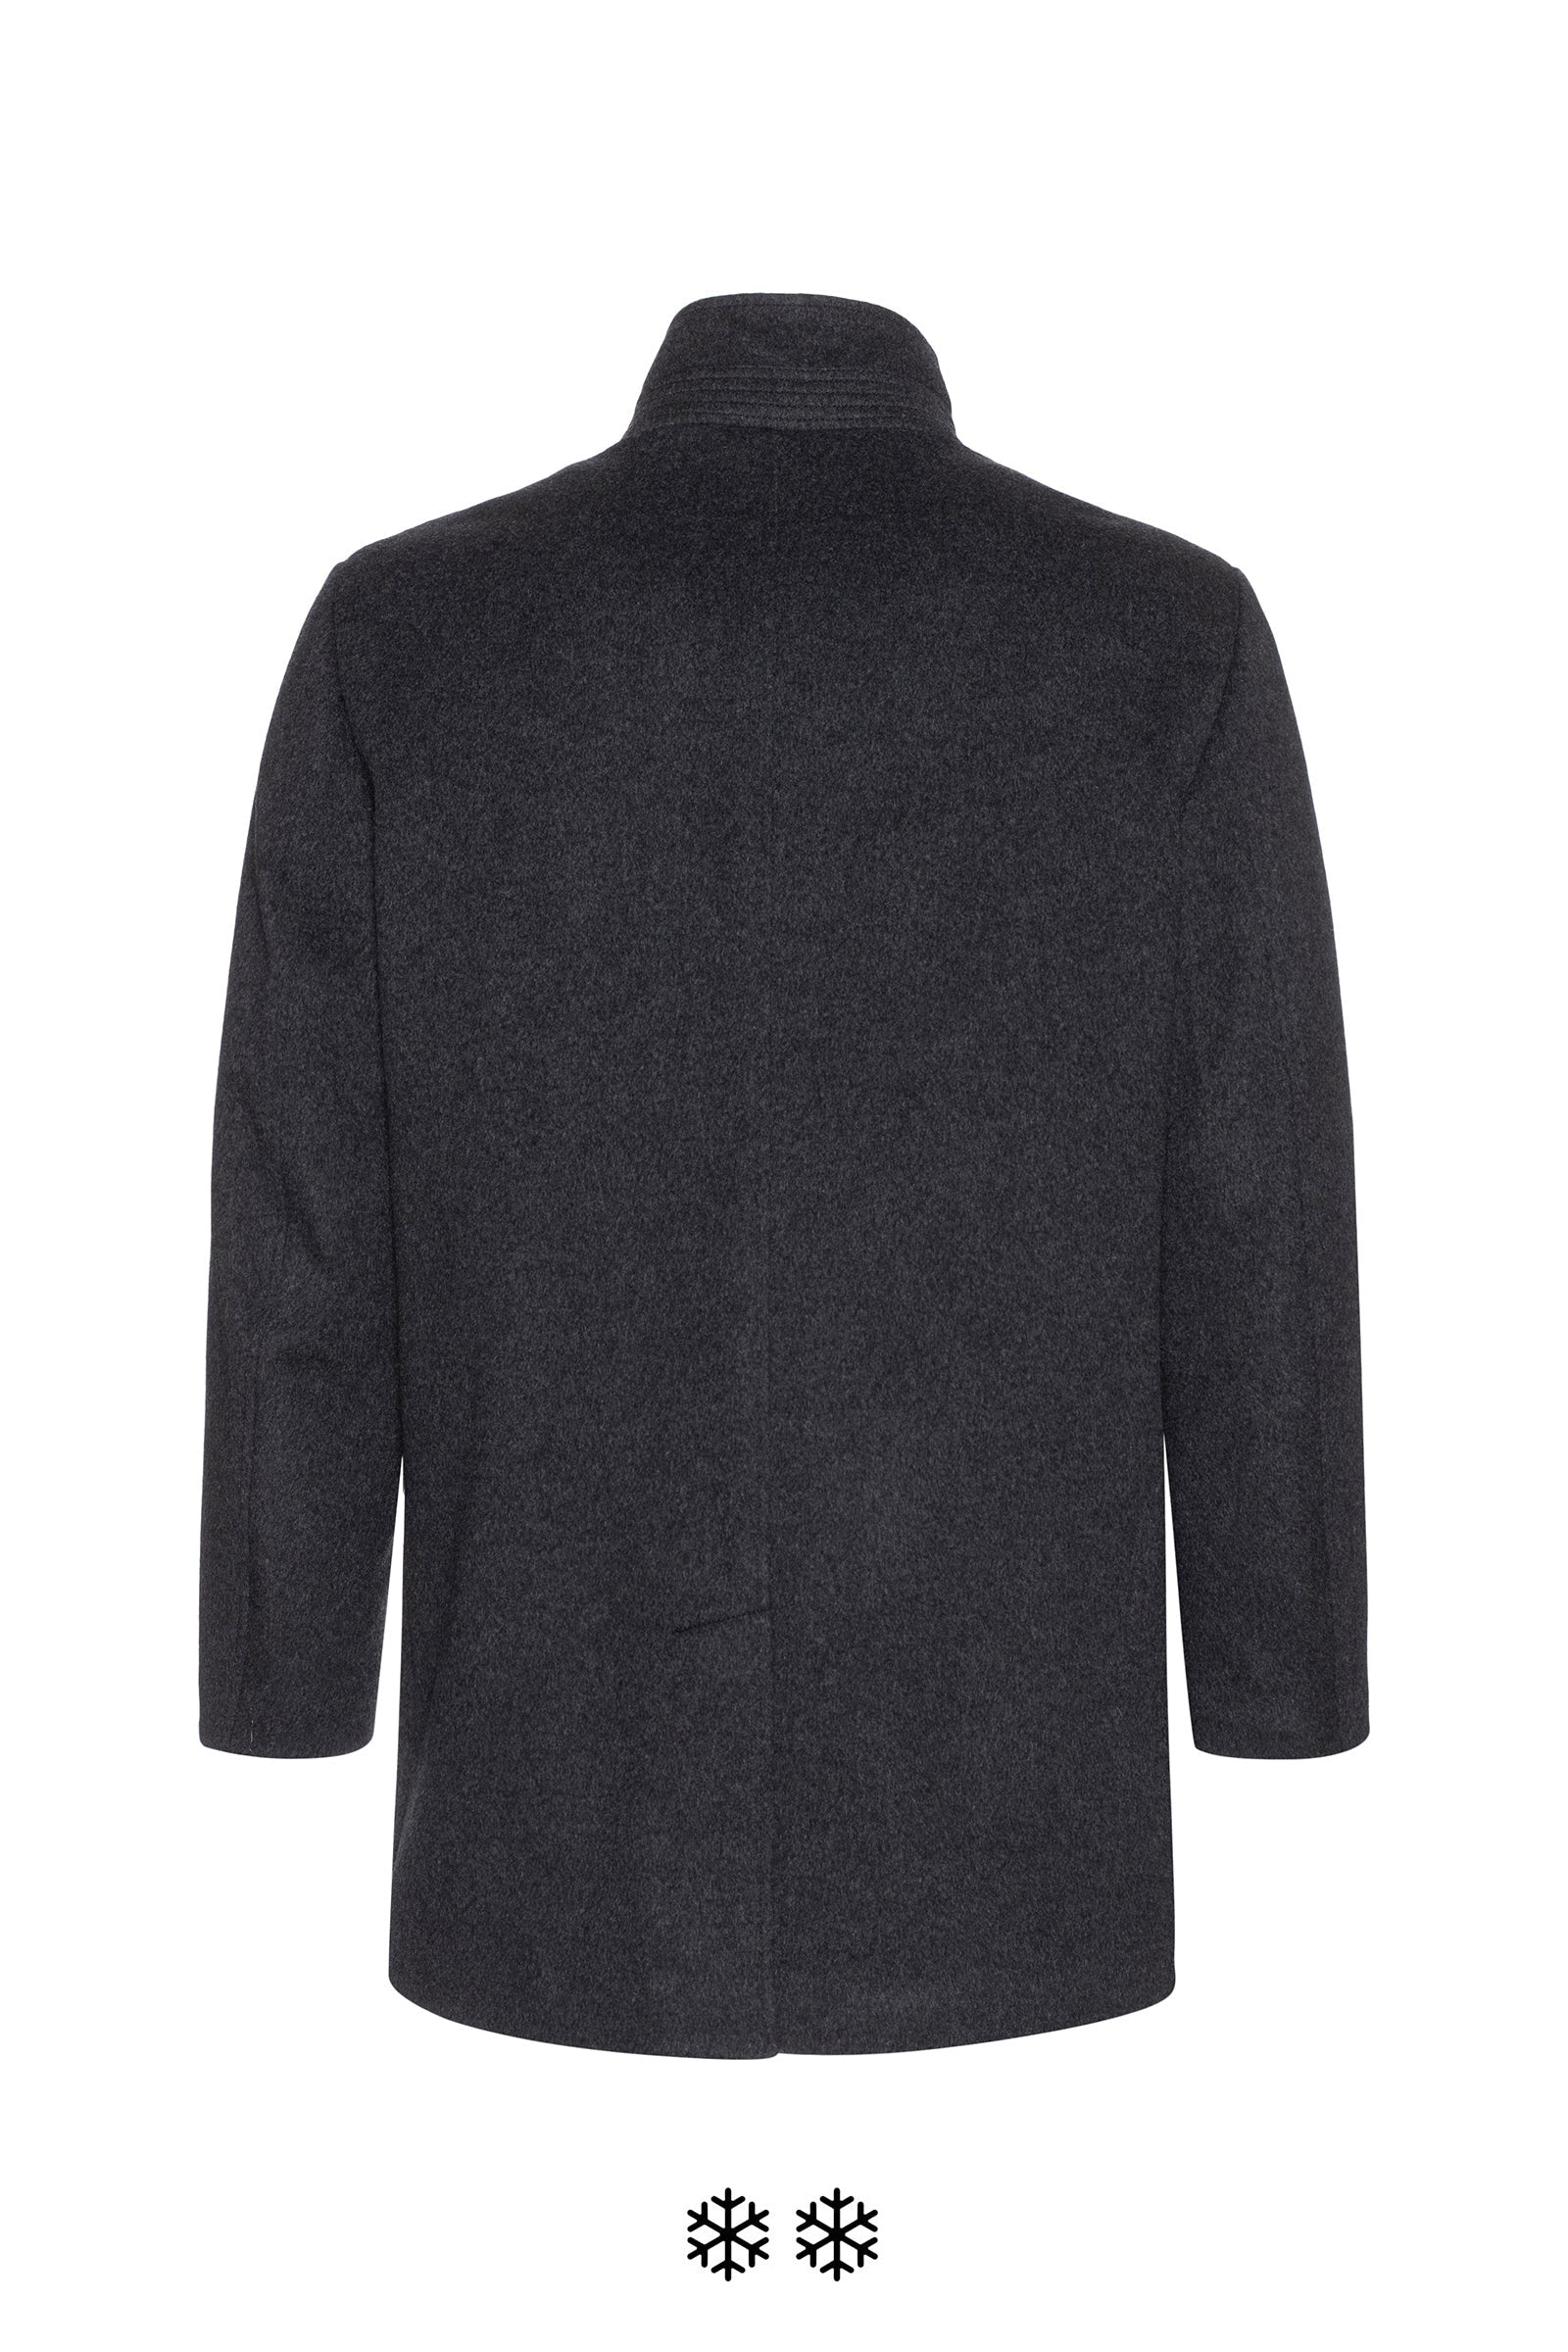 Stafford CHARCOAL Men's Signature Wool Blend Top Coat, 40 REG